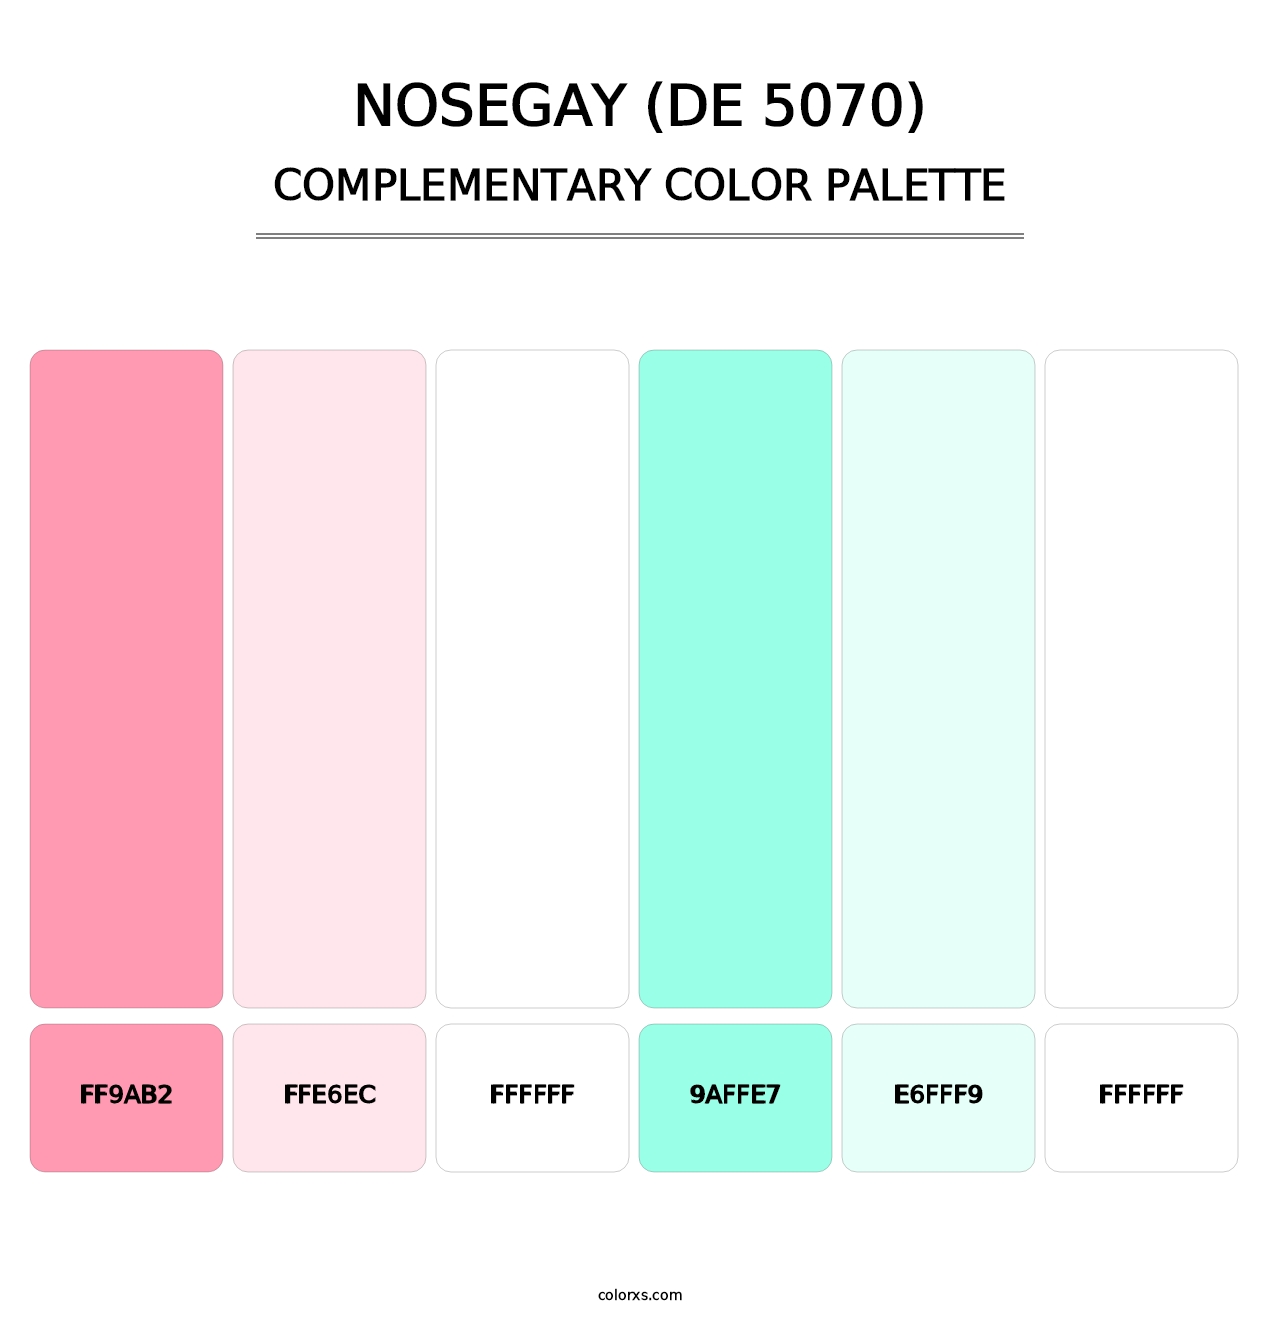 Nosegay (DE 5070) - Complementary Color Palette